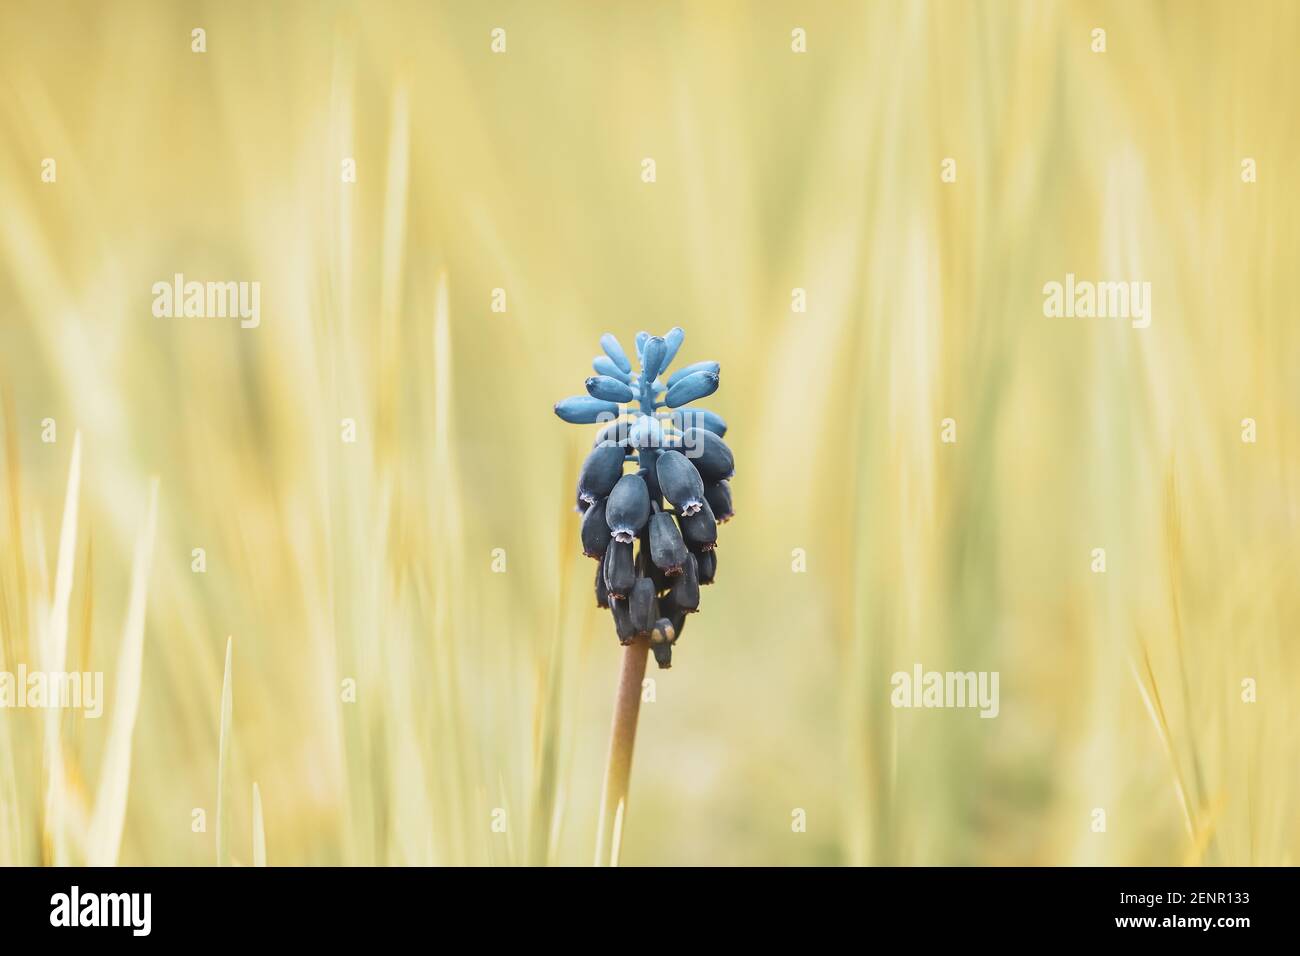 Nazaréen bleu (Muscari negectum) parmi l'herbe de prairie avec un fond de bokeh jaune agréable Banque D'Images